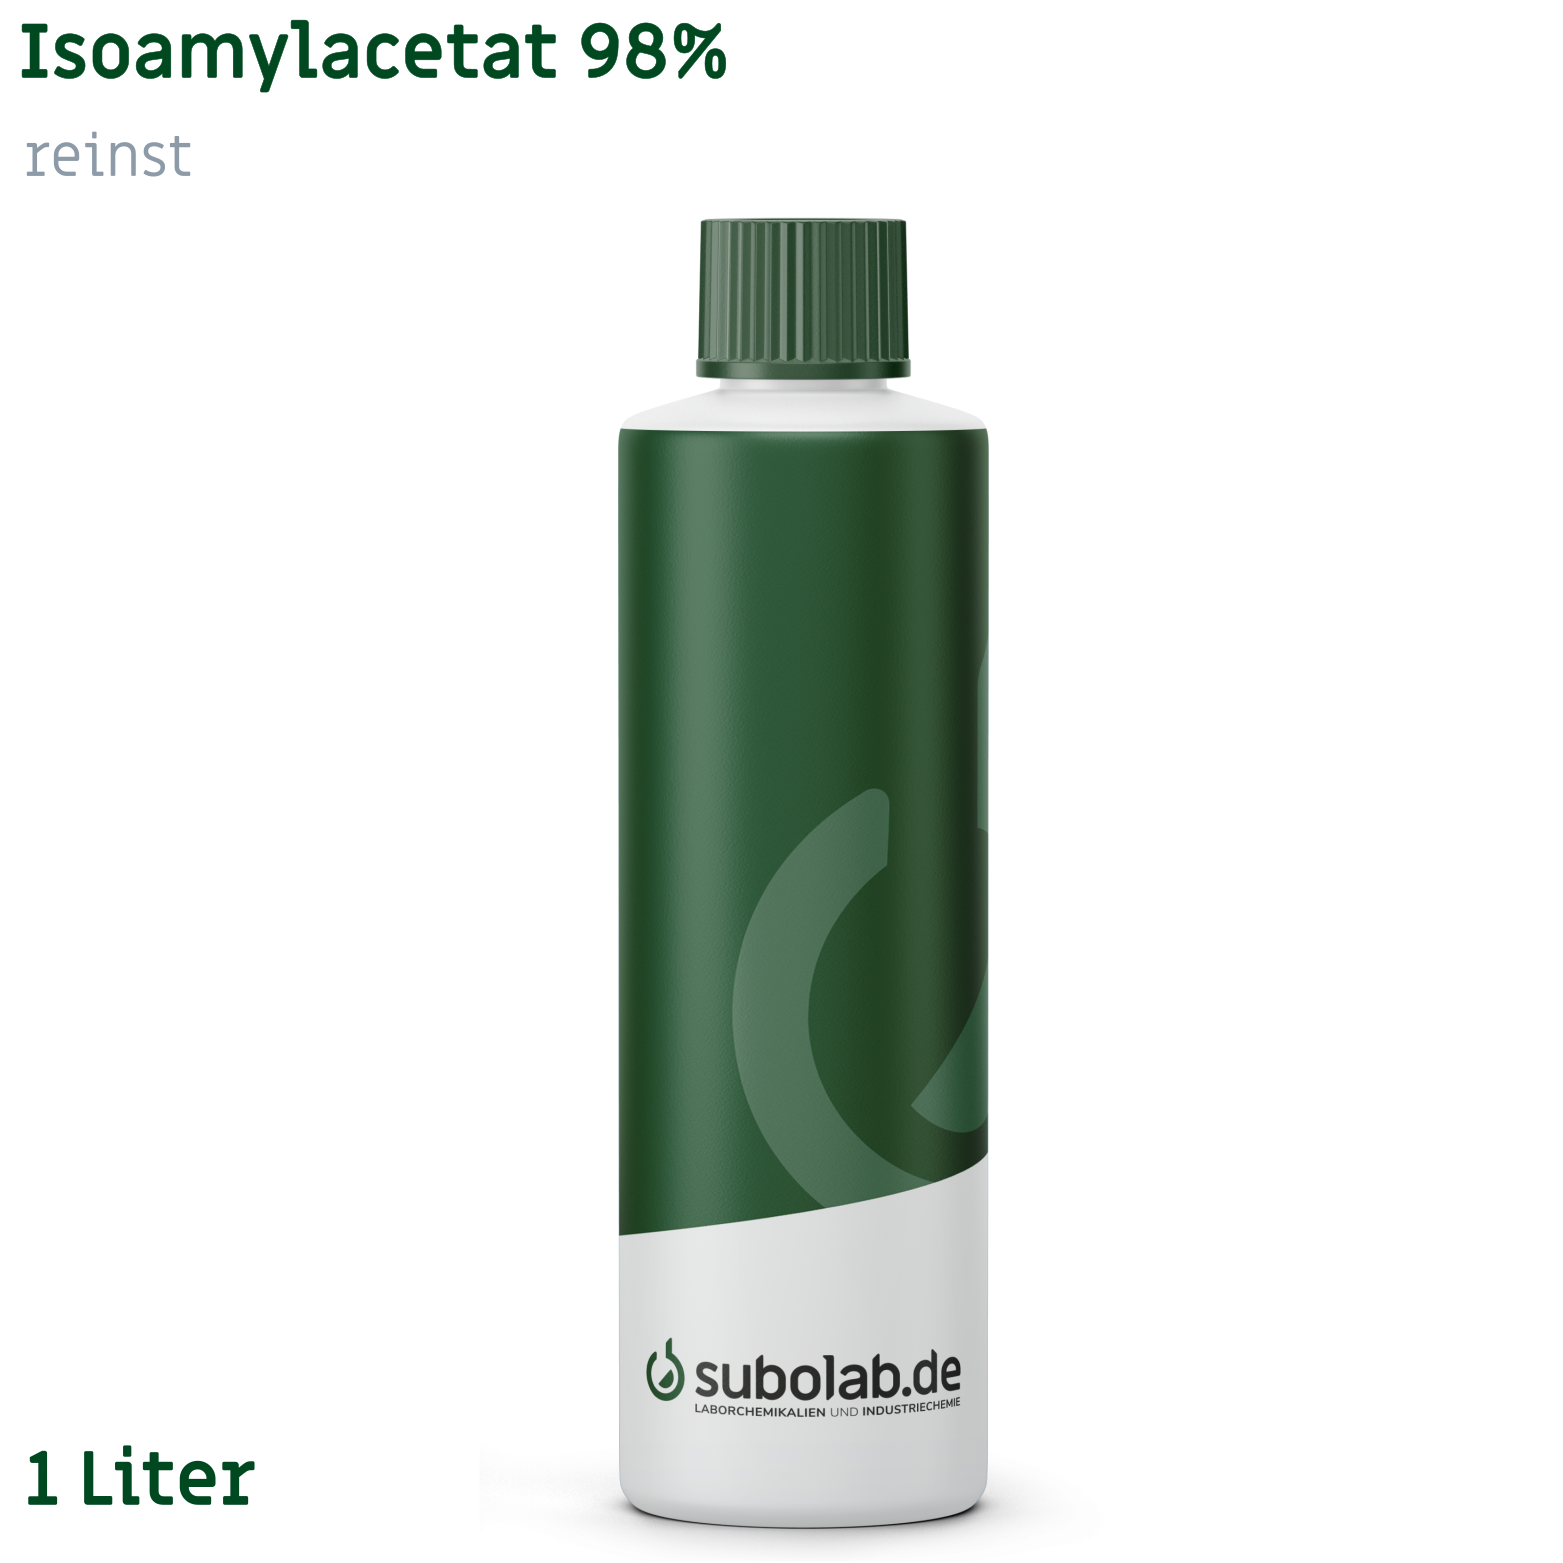 Bild von Isoamylacetat 98% reinst (1 Liter)